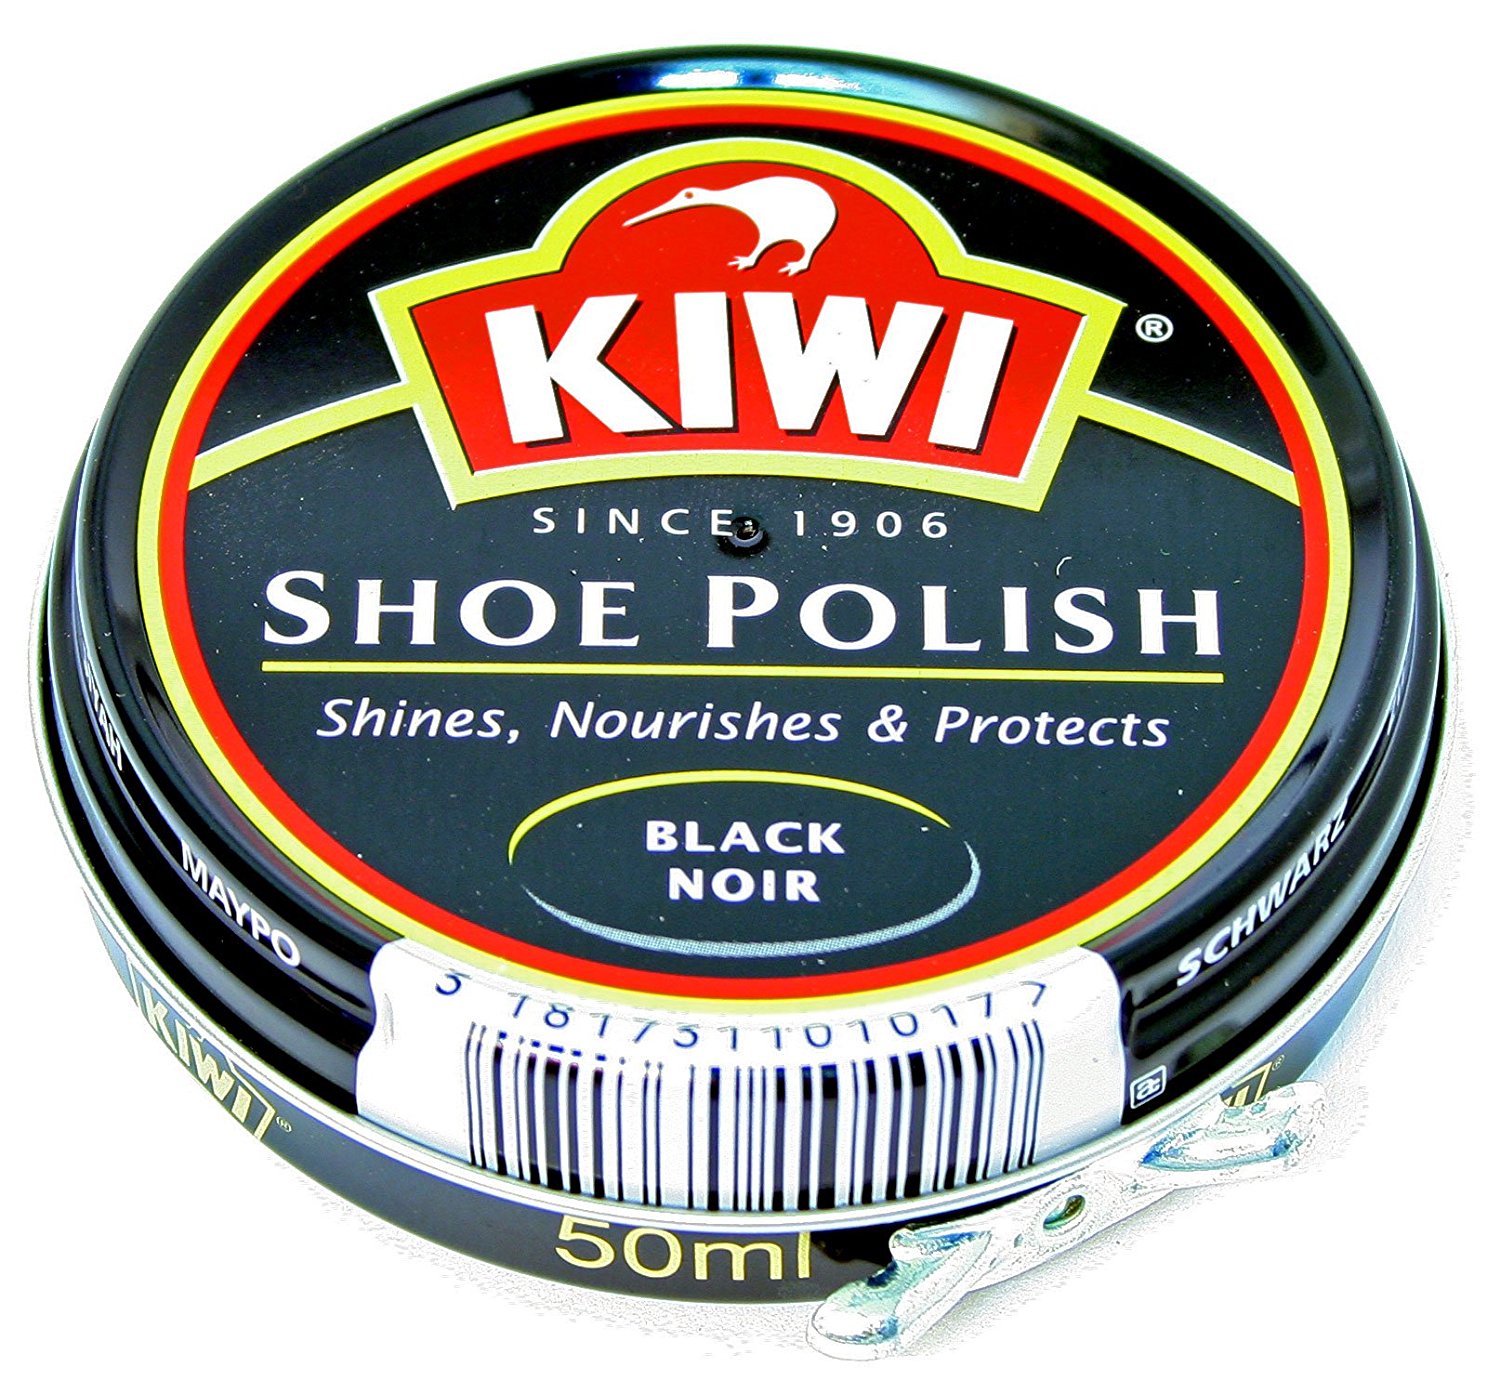 kiwi shoe products